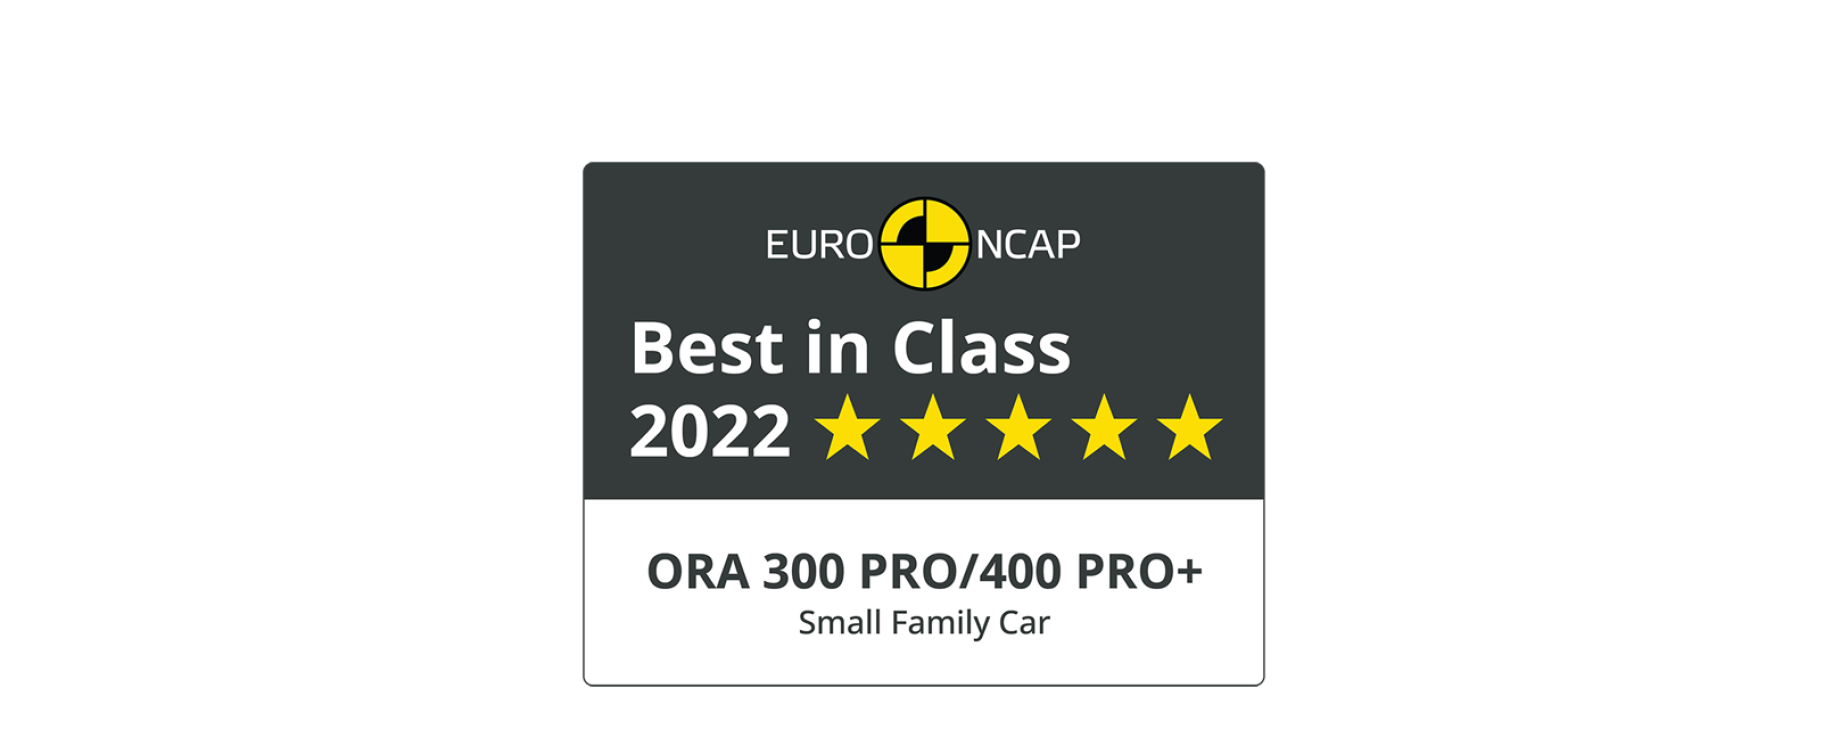 ORA best in class Euro NCAP